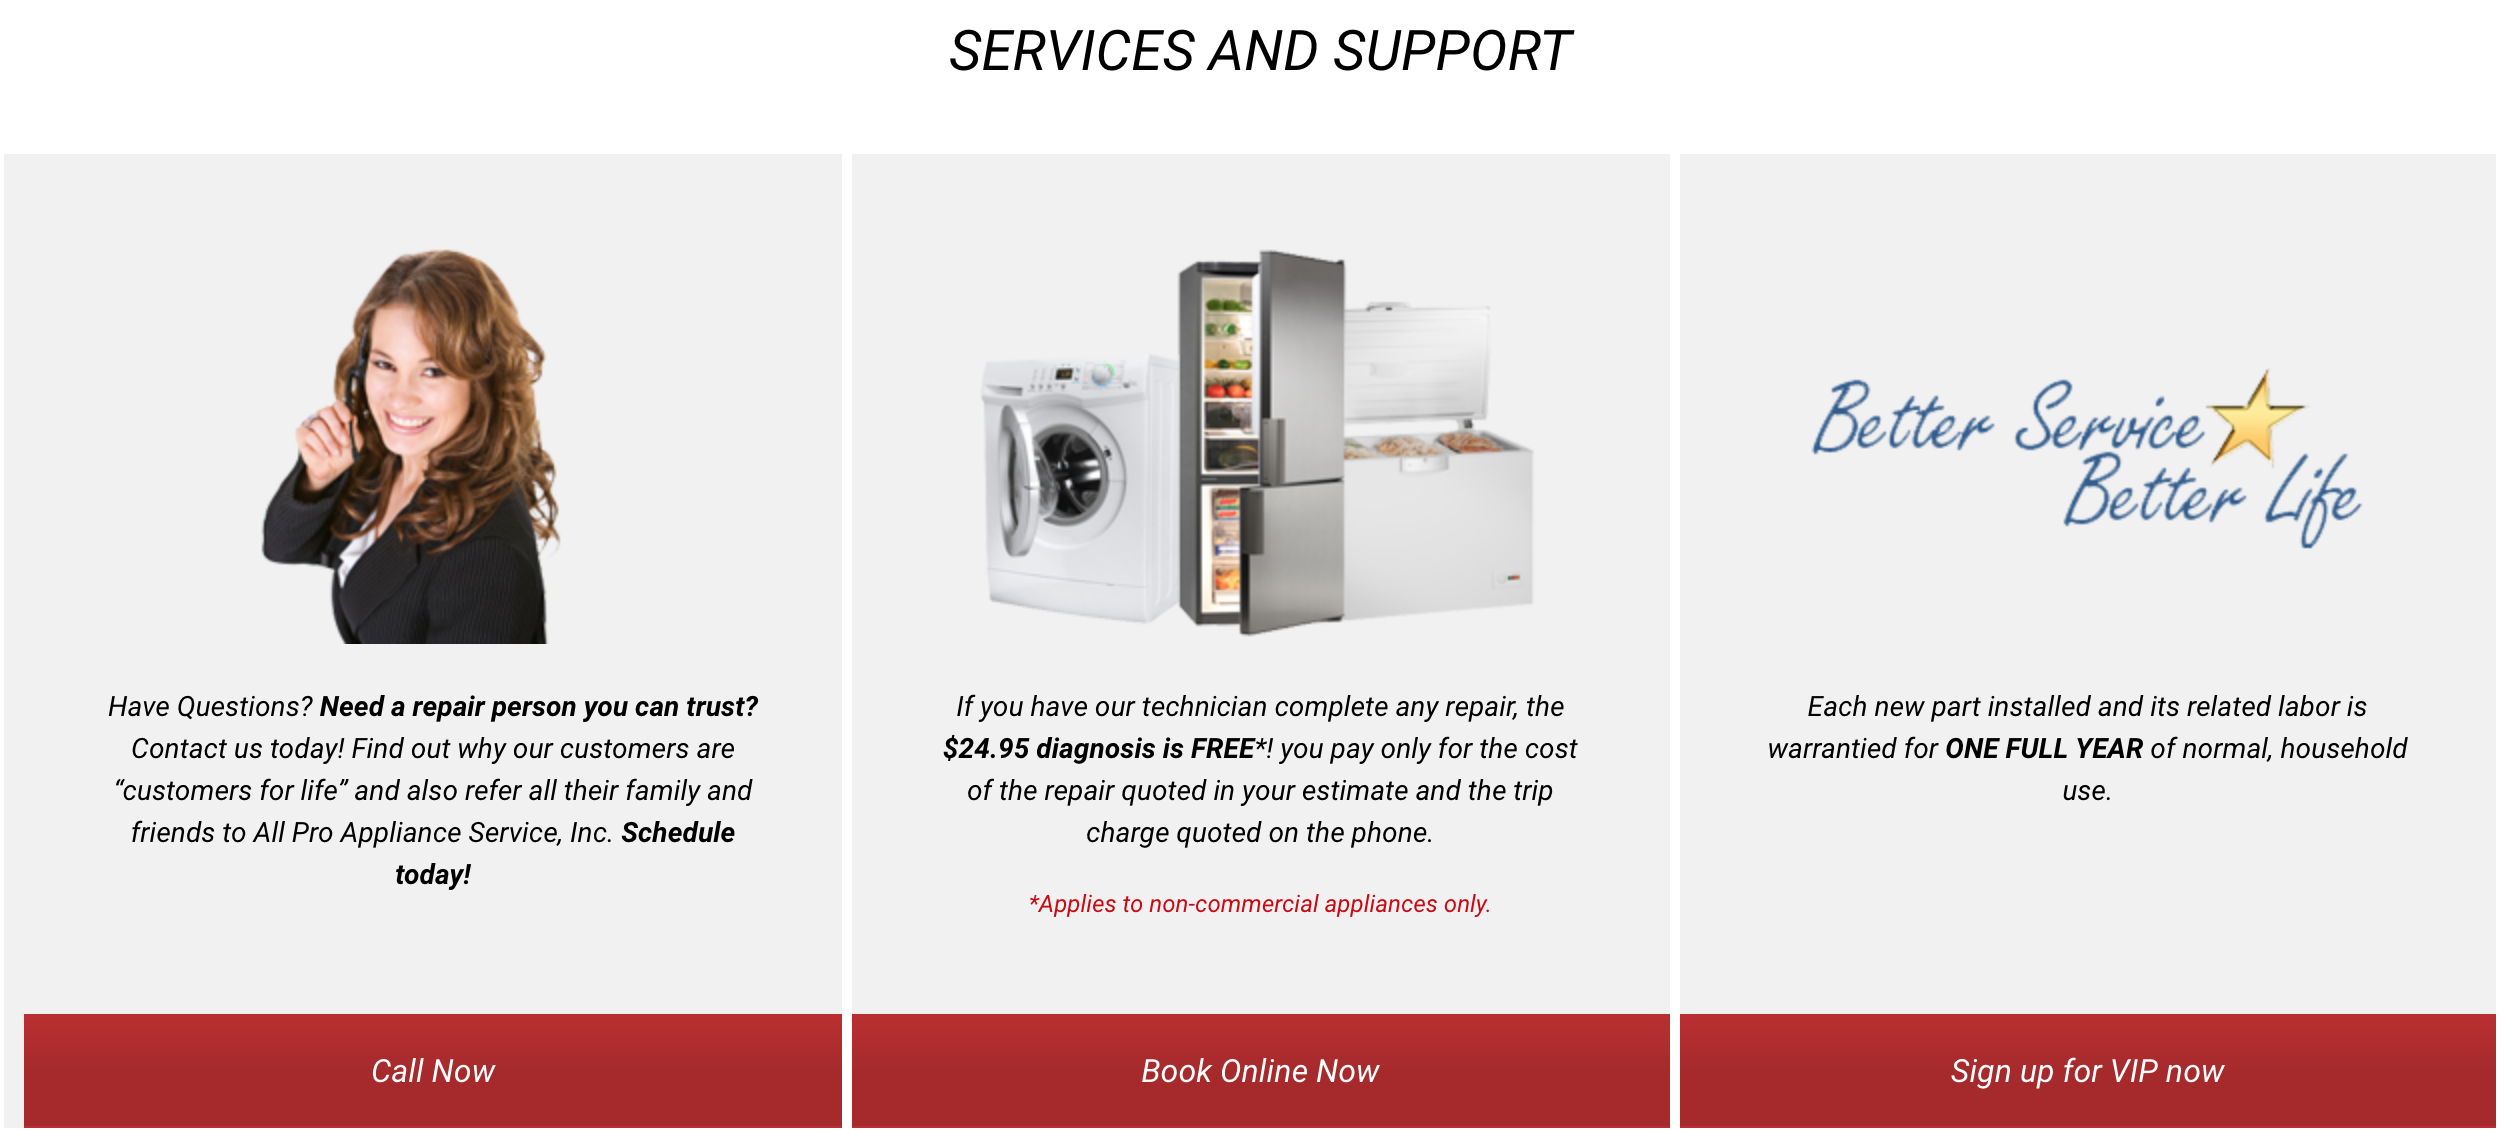 Garys Appliance Service